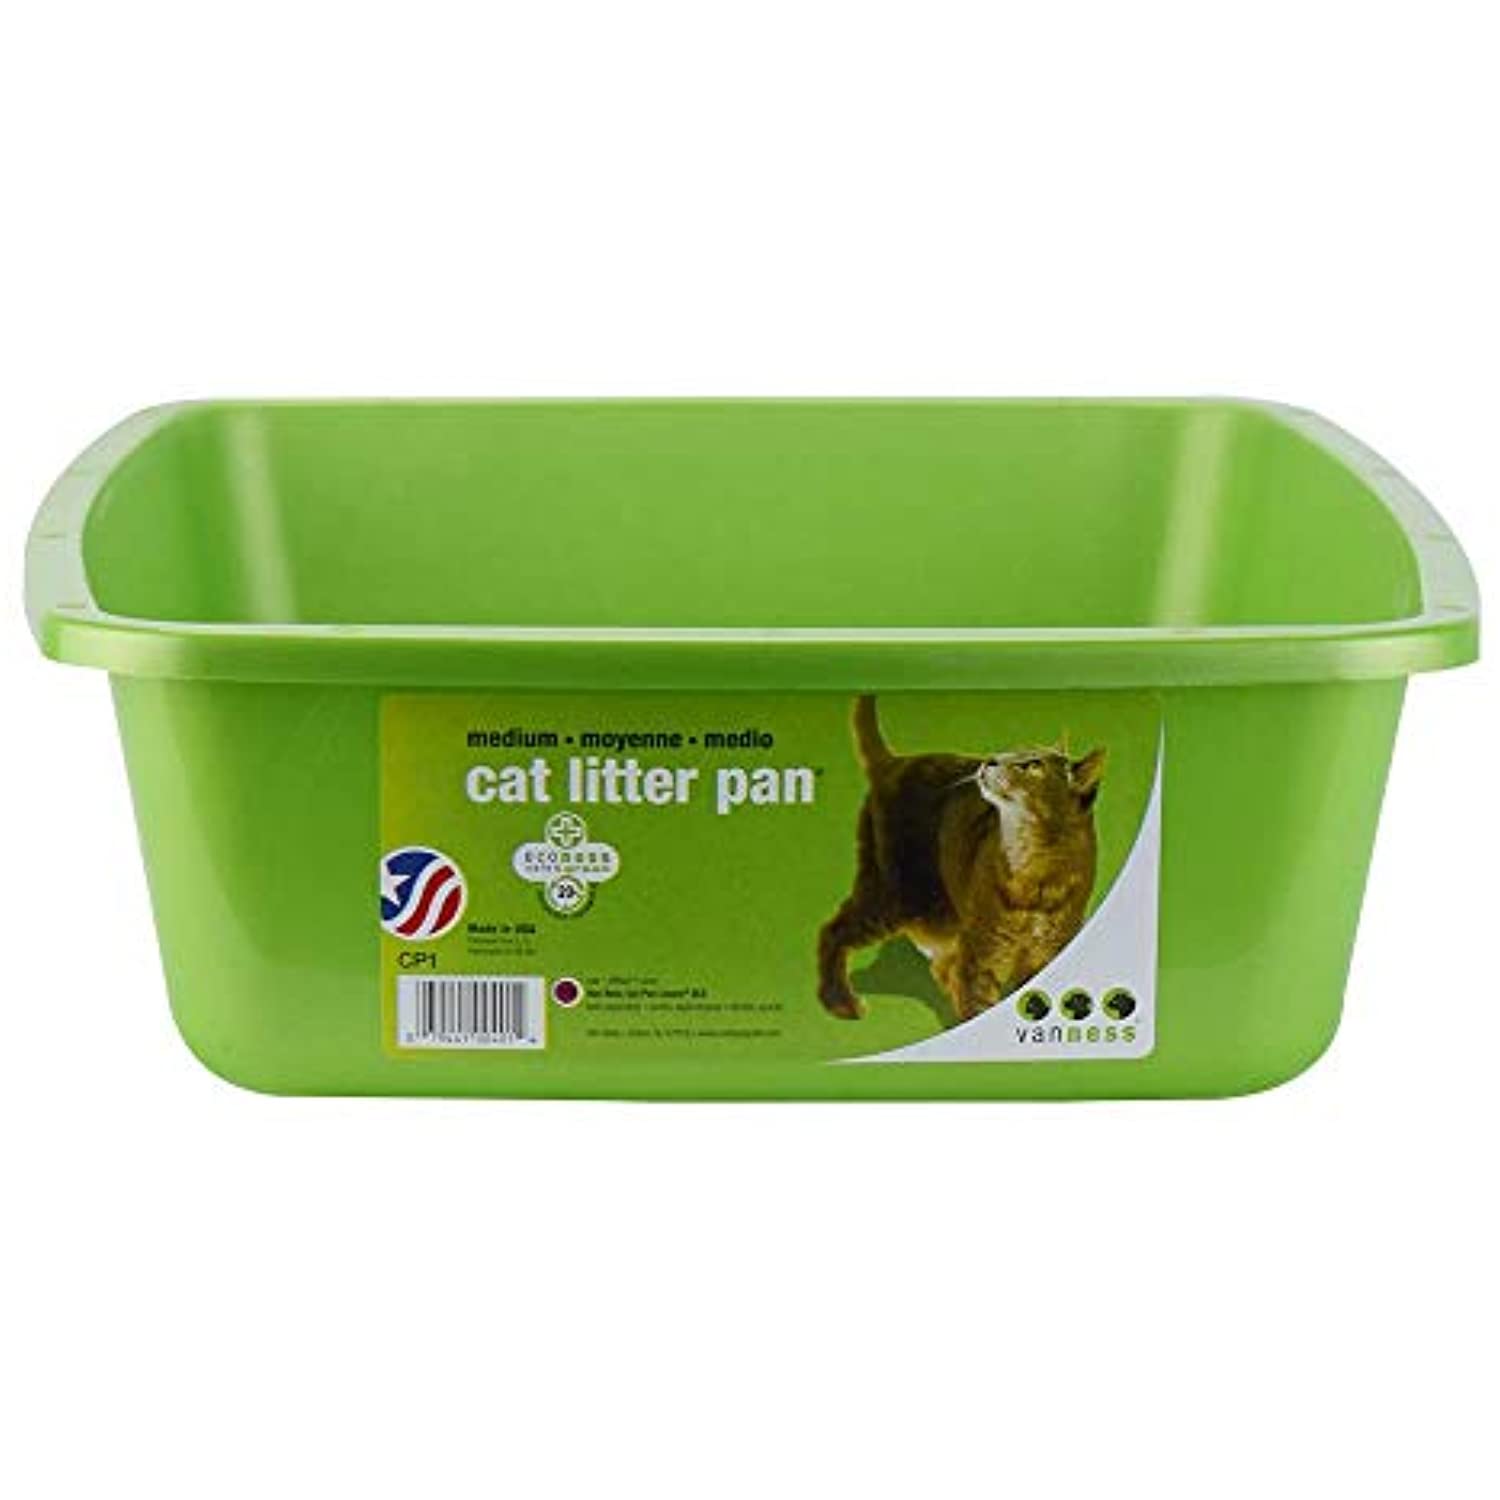 VAN NESS Cat Litter Pan, Blue, Small 